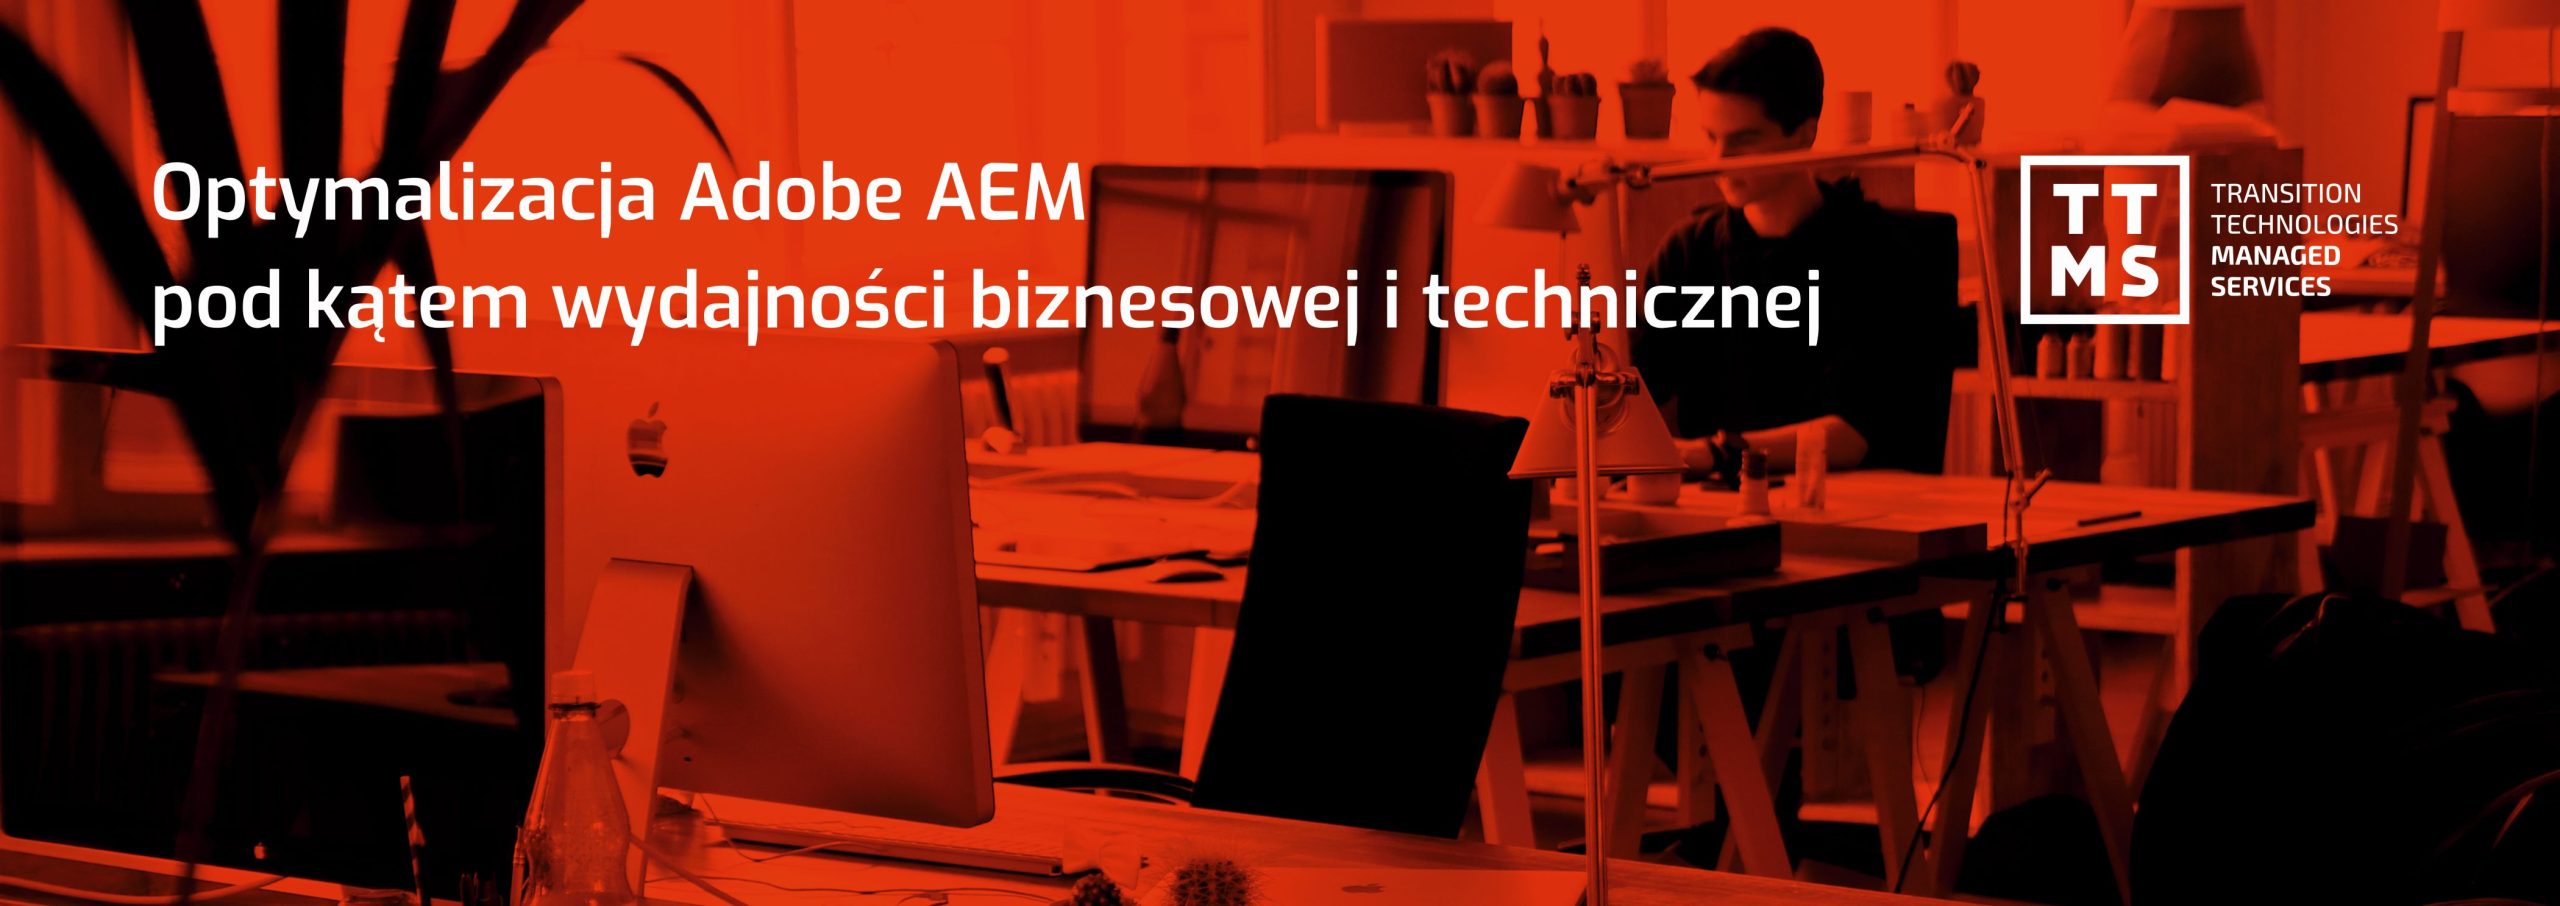 Optymalizacja Adobe AEM pod kątem wydajności biznesowej i technicznej